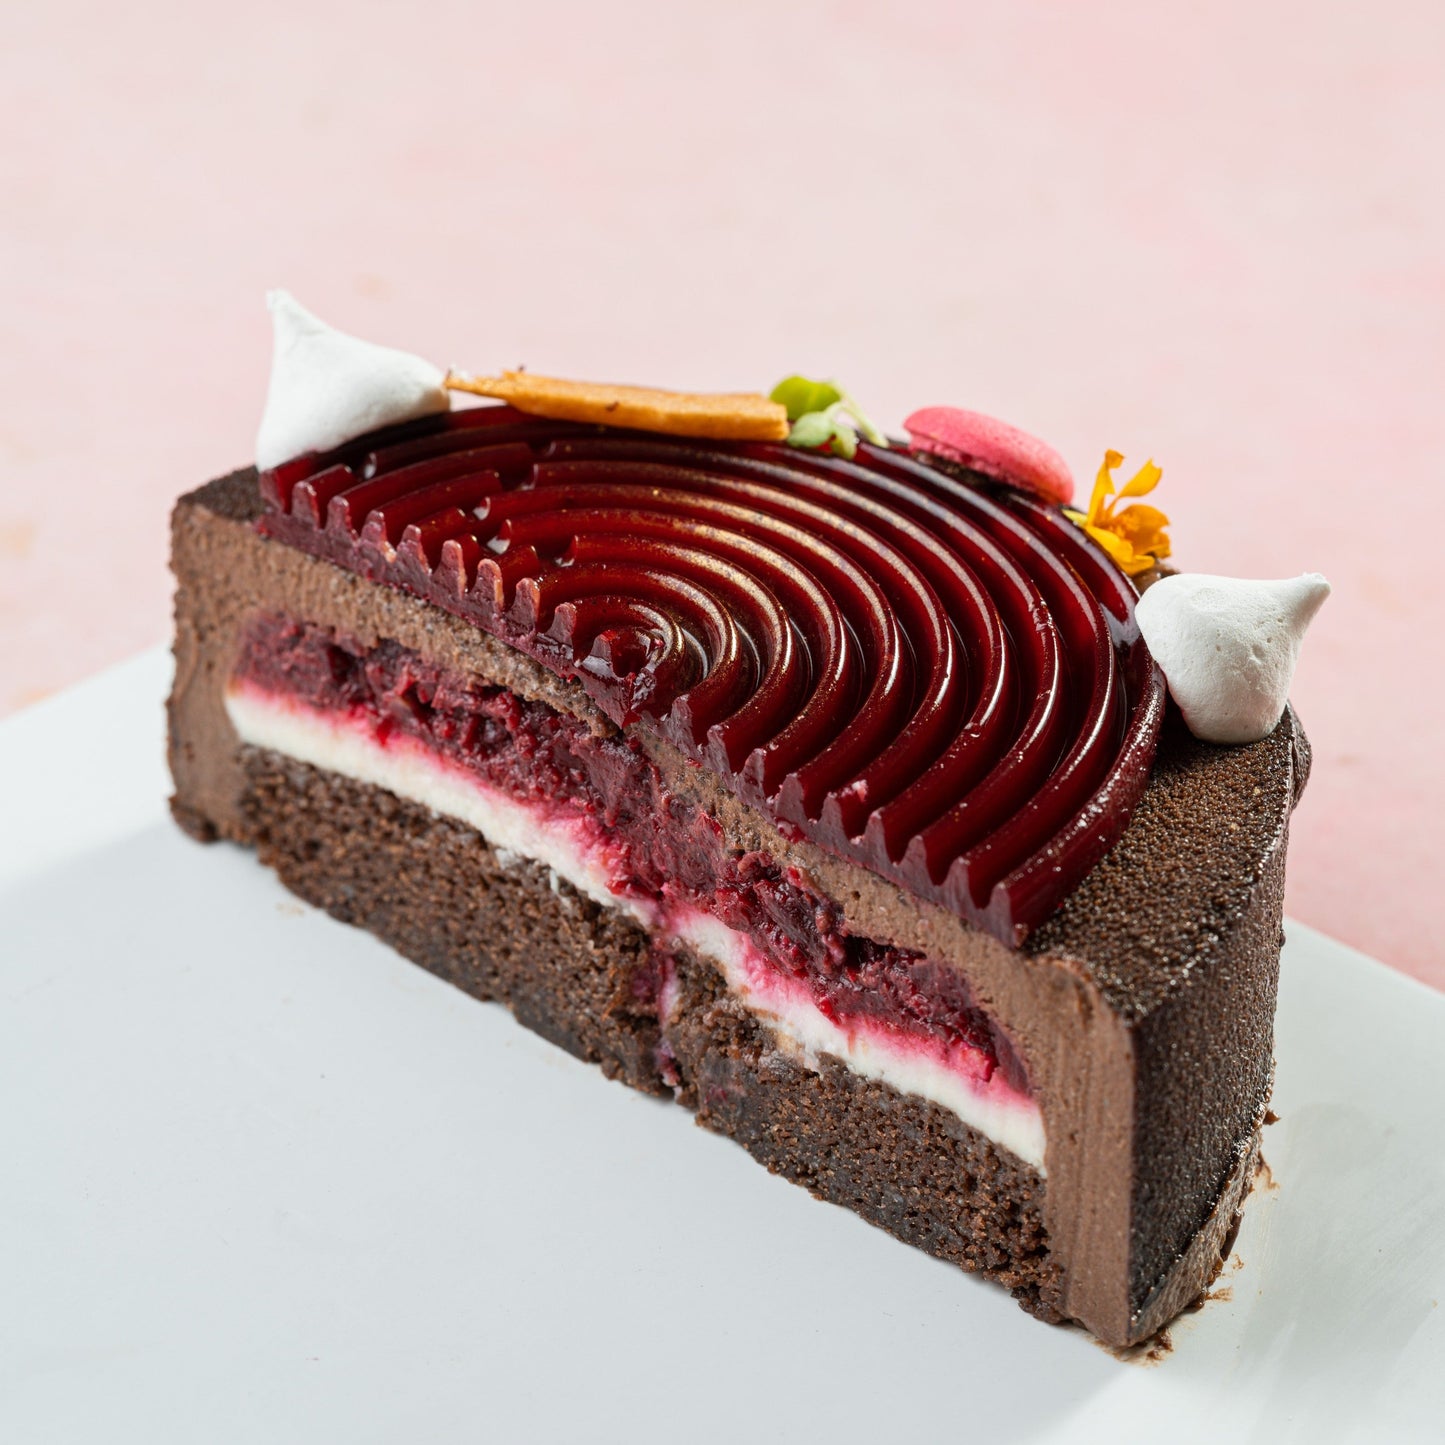 Cherry & Chocolate Cake